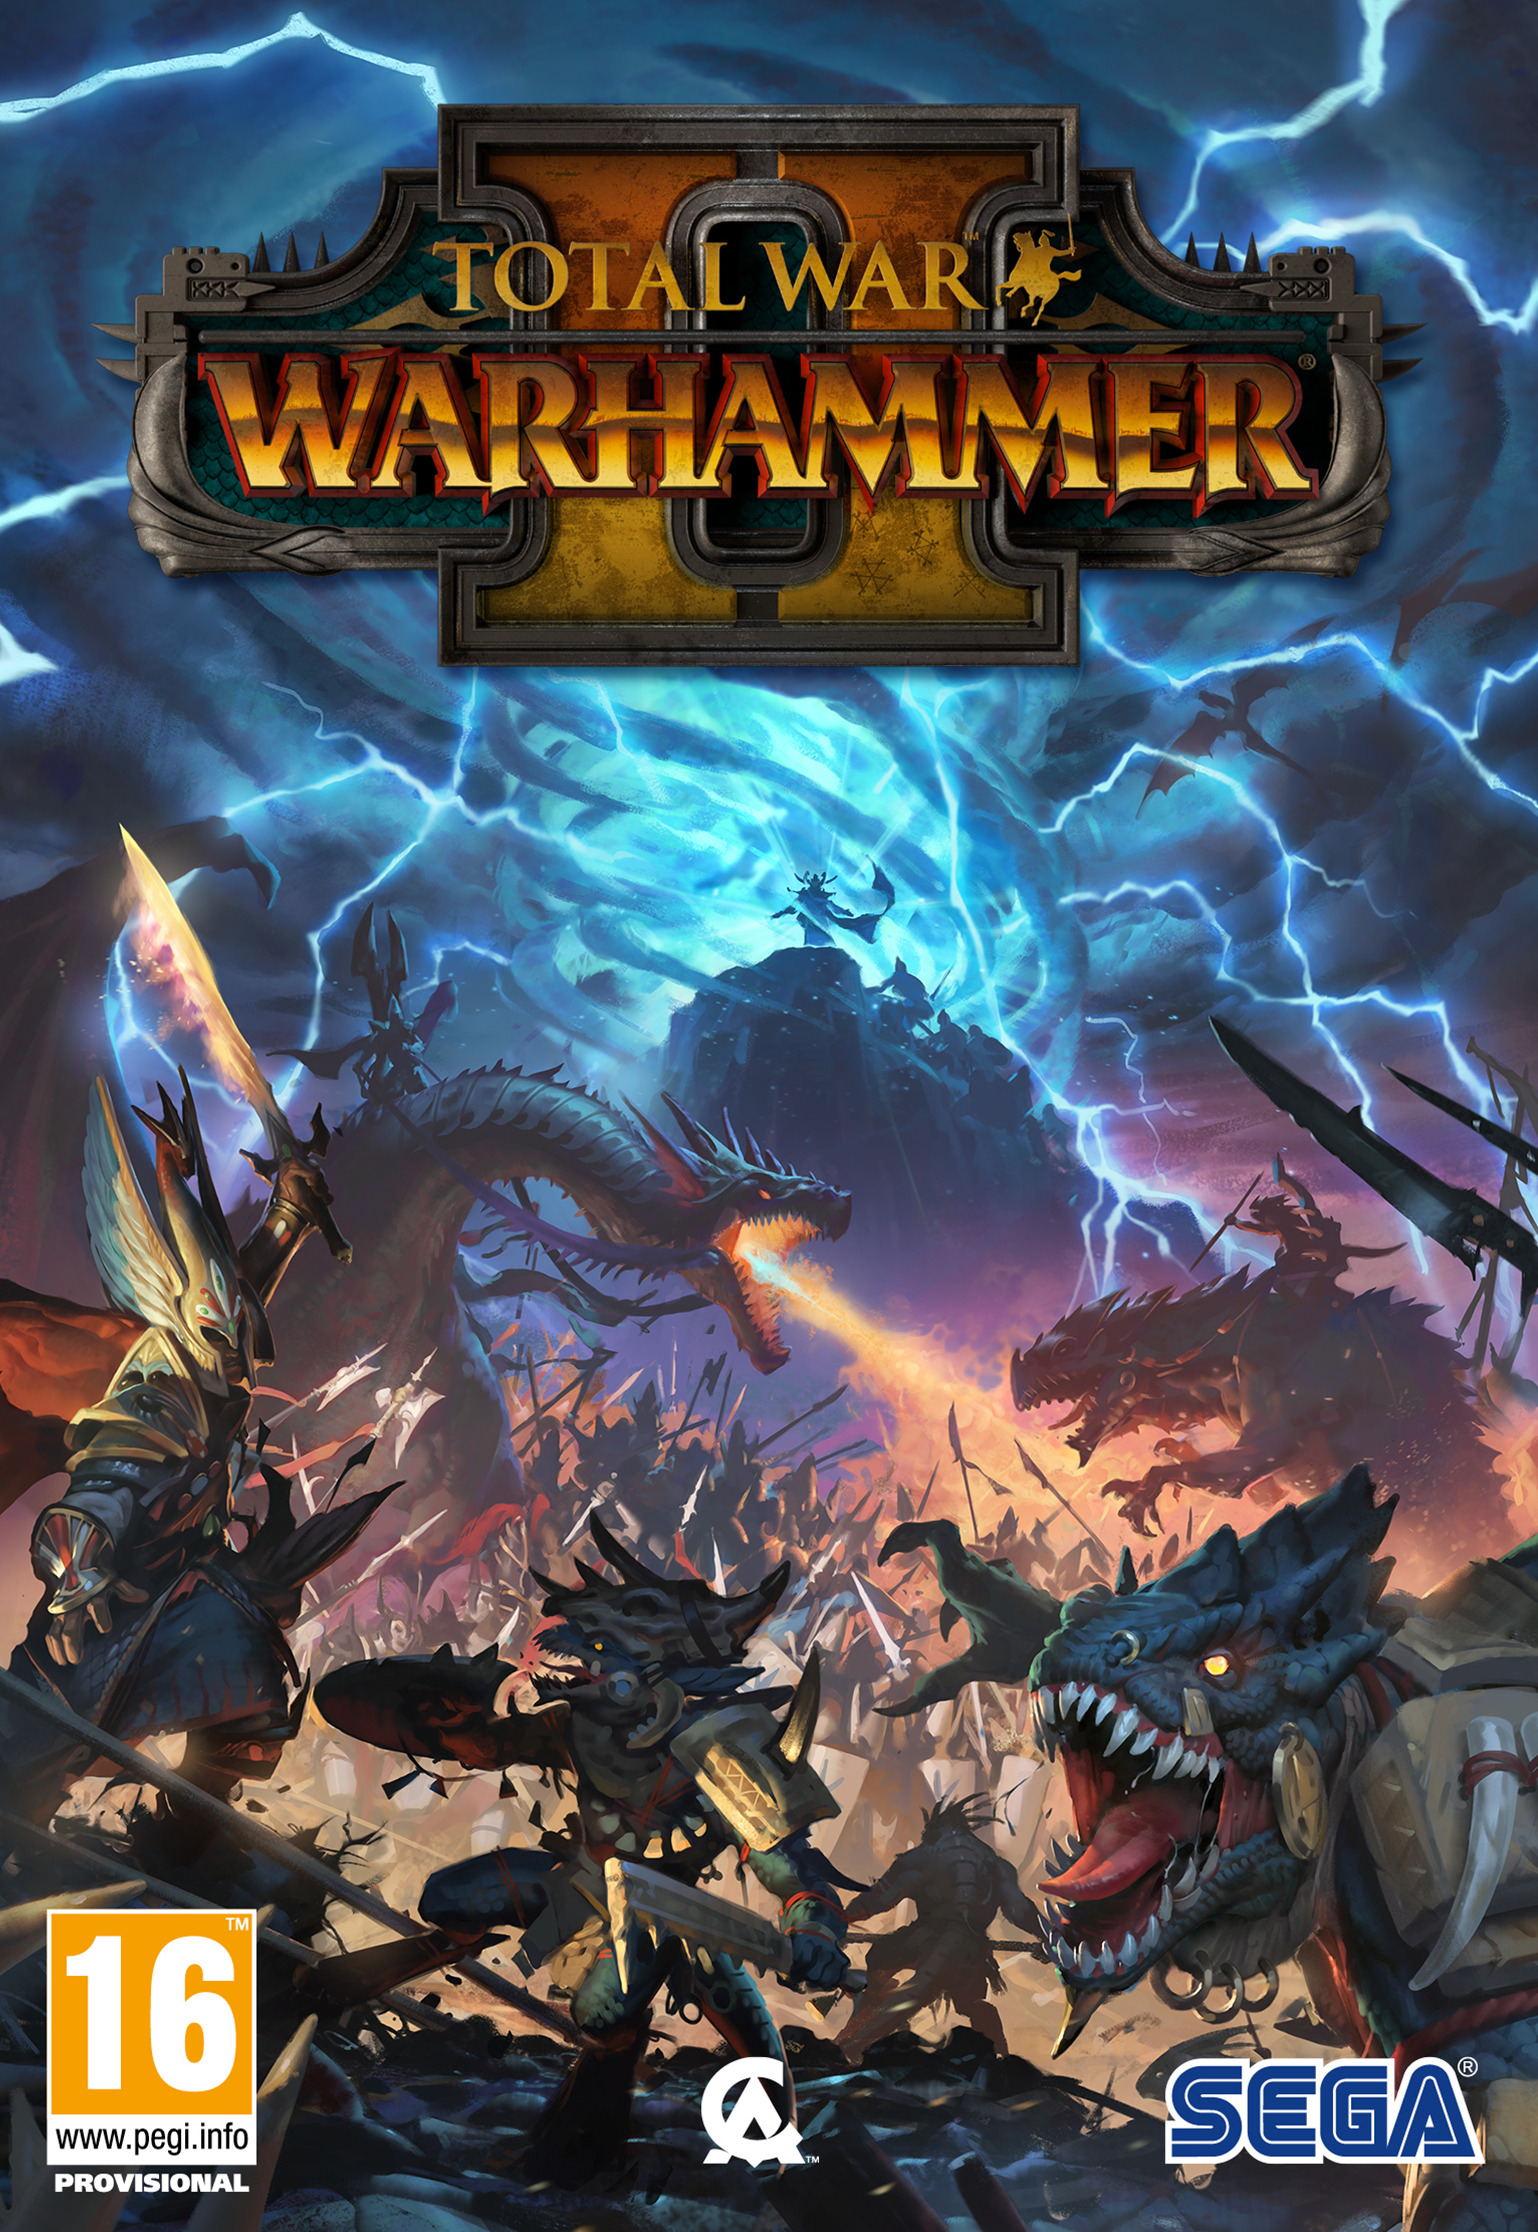 total war warhammer 2 dlc release schedule